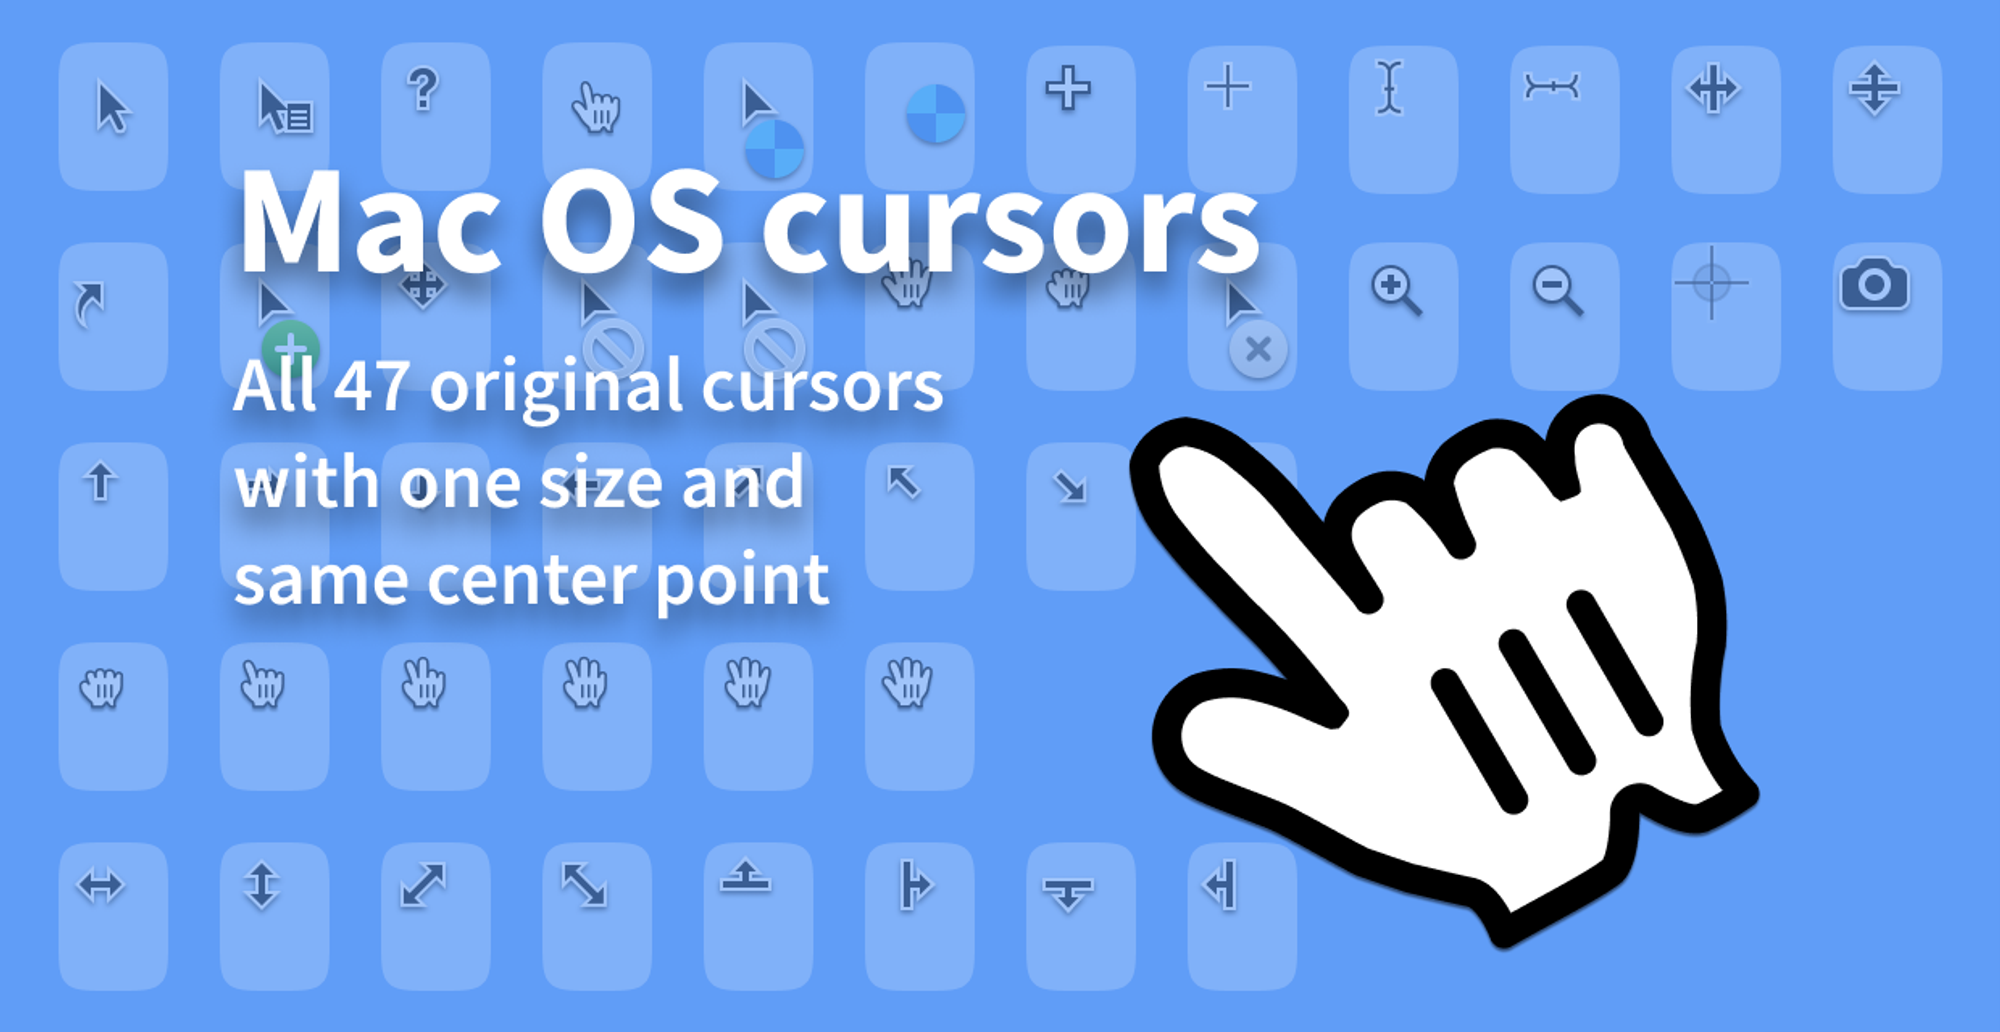 Mac OS cursors